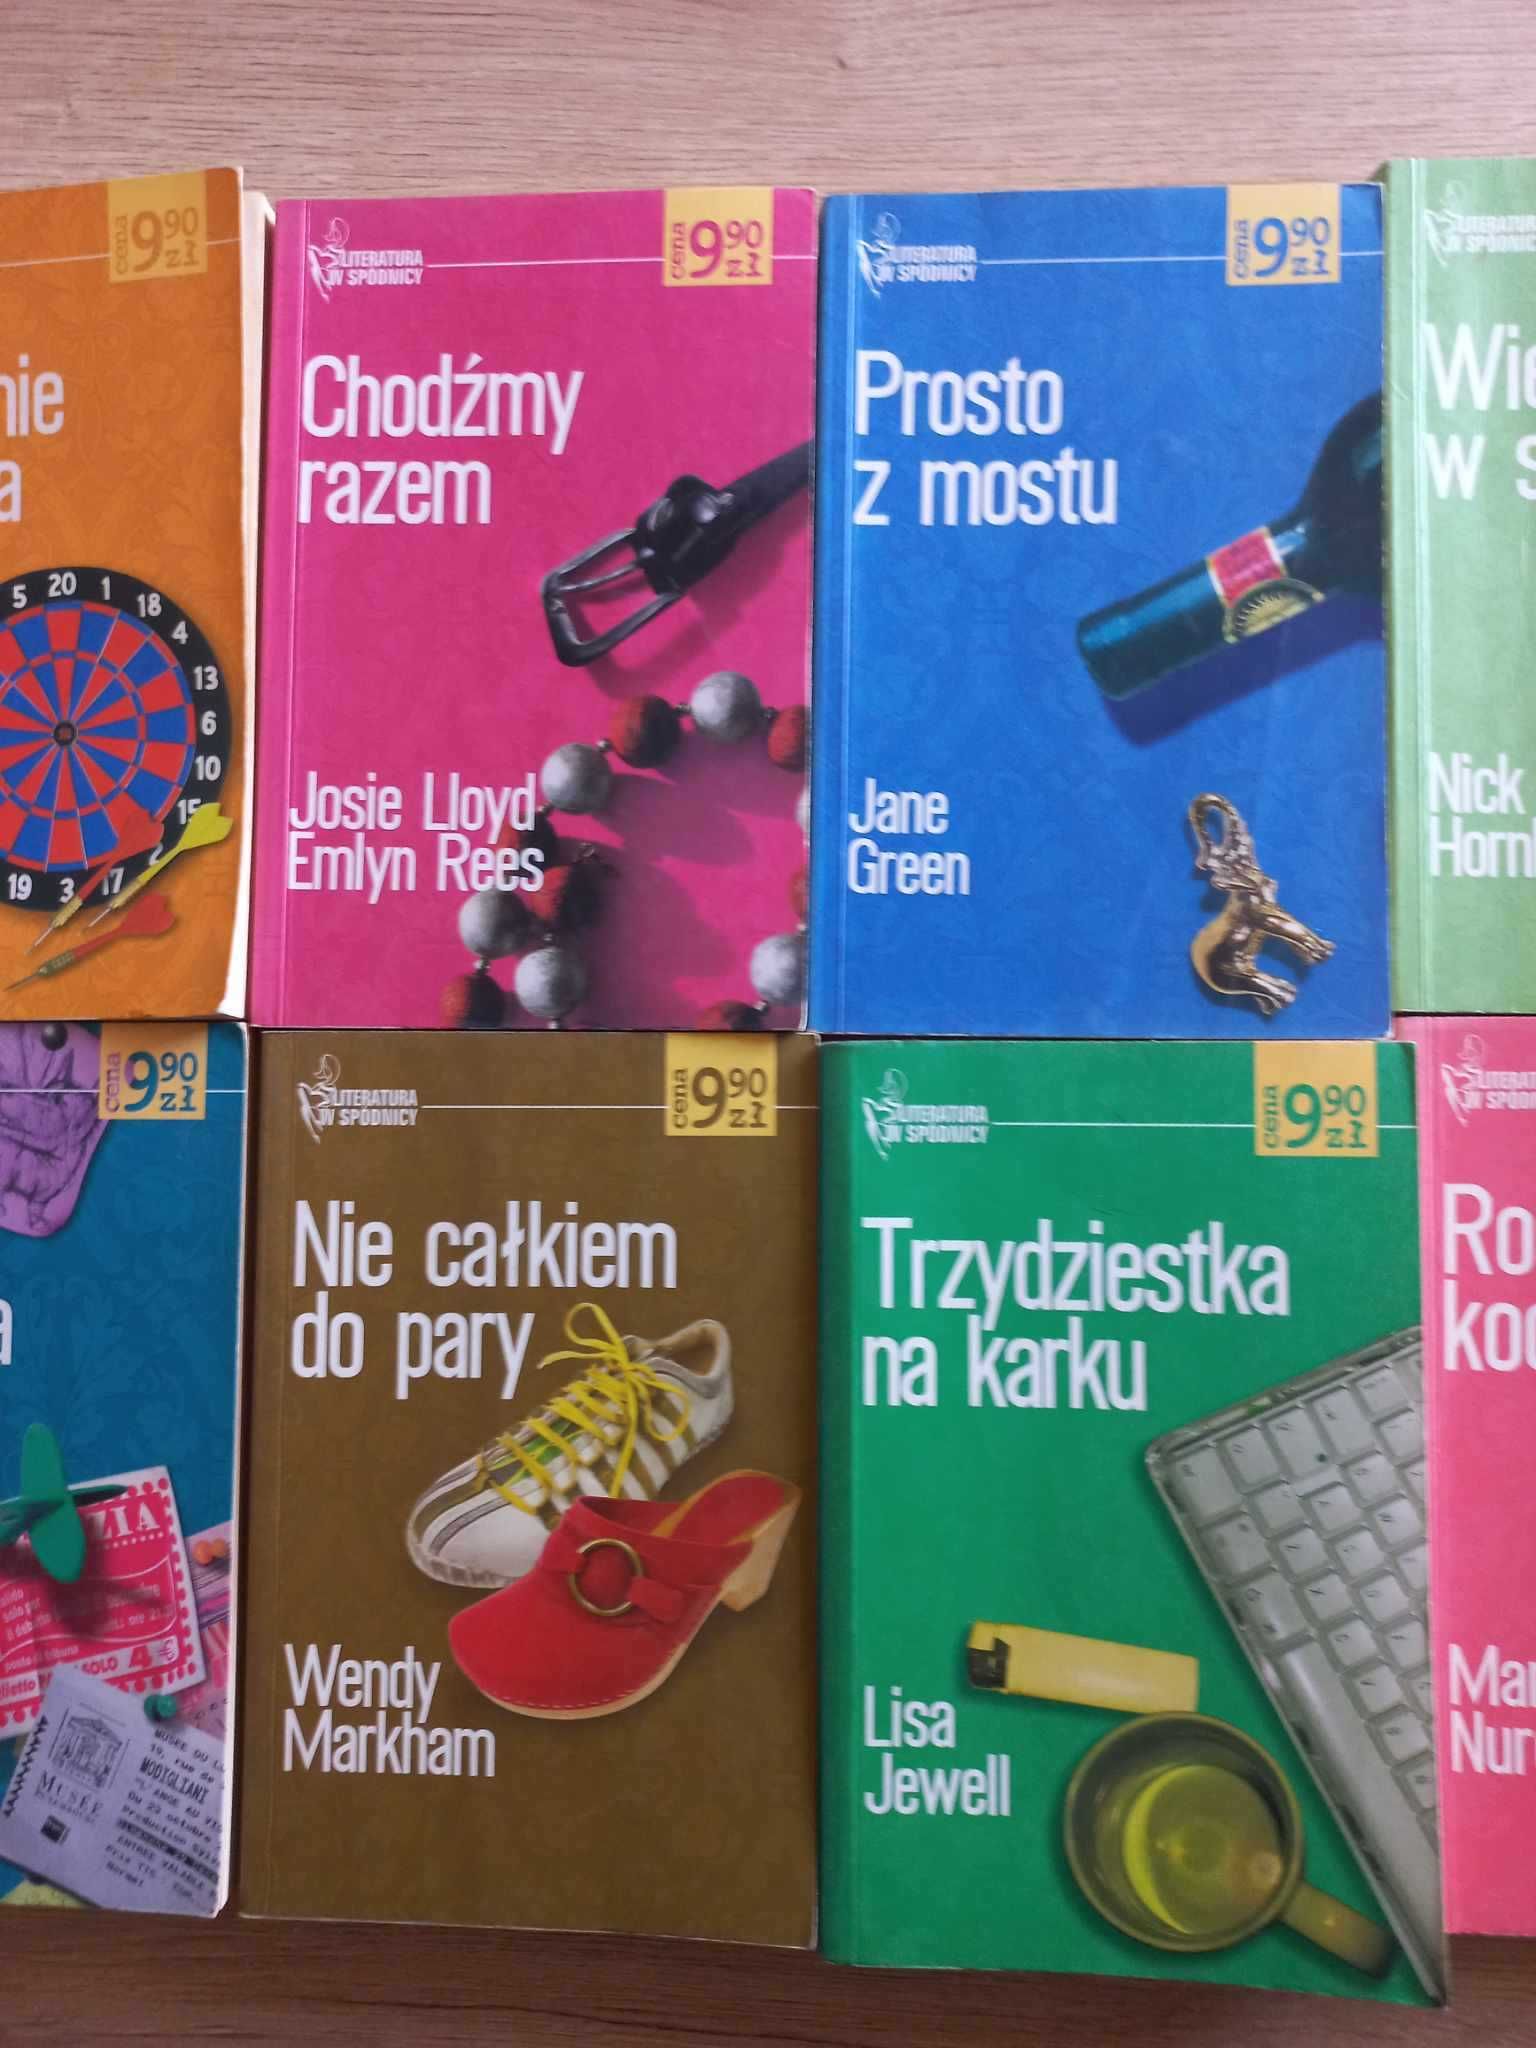 10 książek najlepszych autorek literatury kobiecej - Maria Nurowska ..